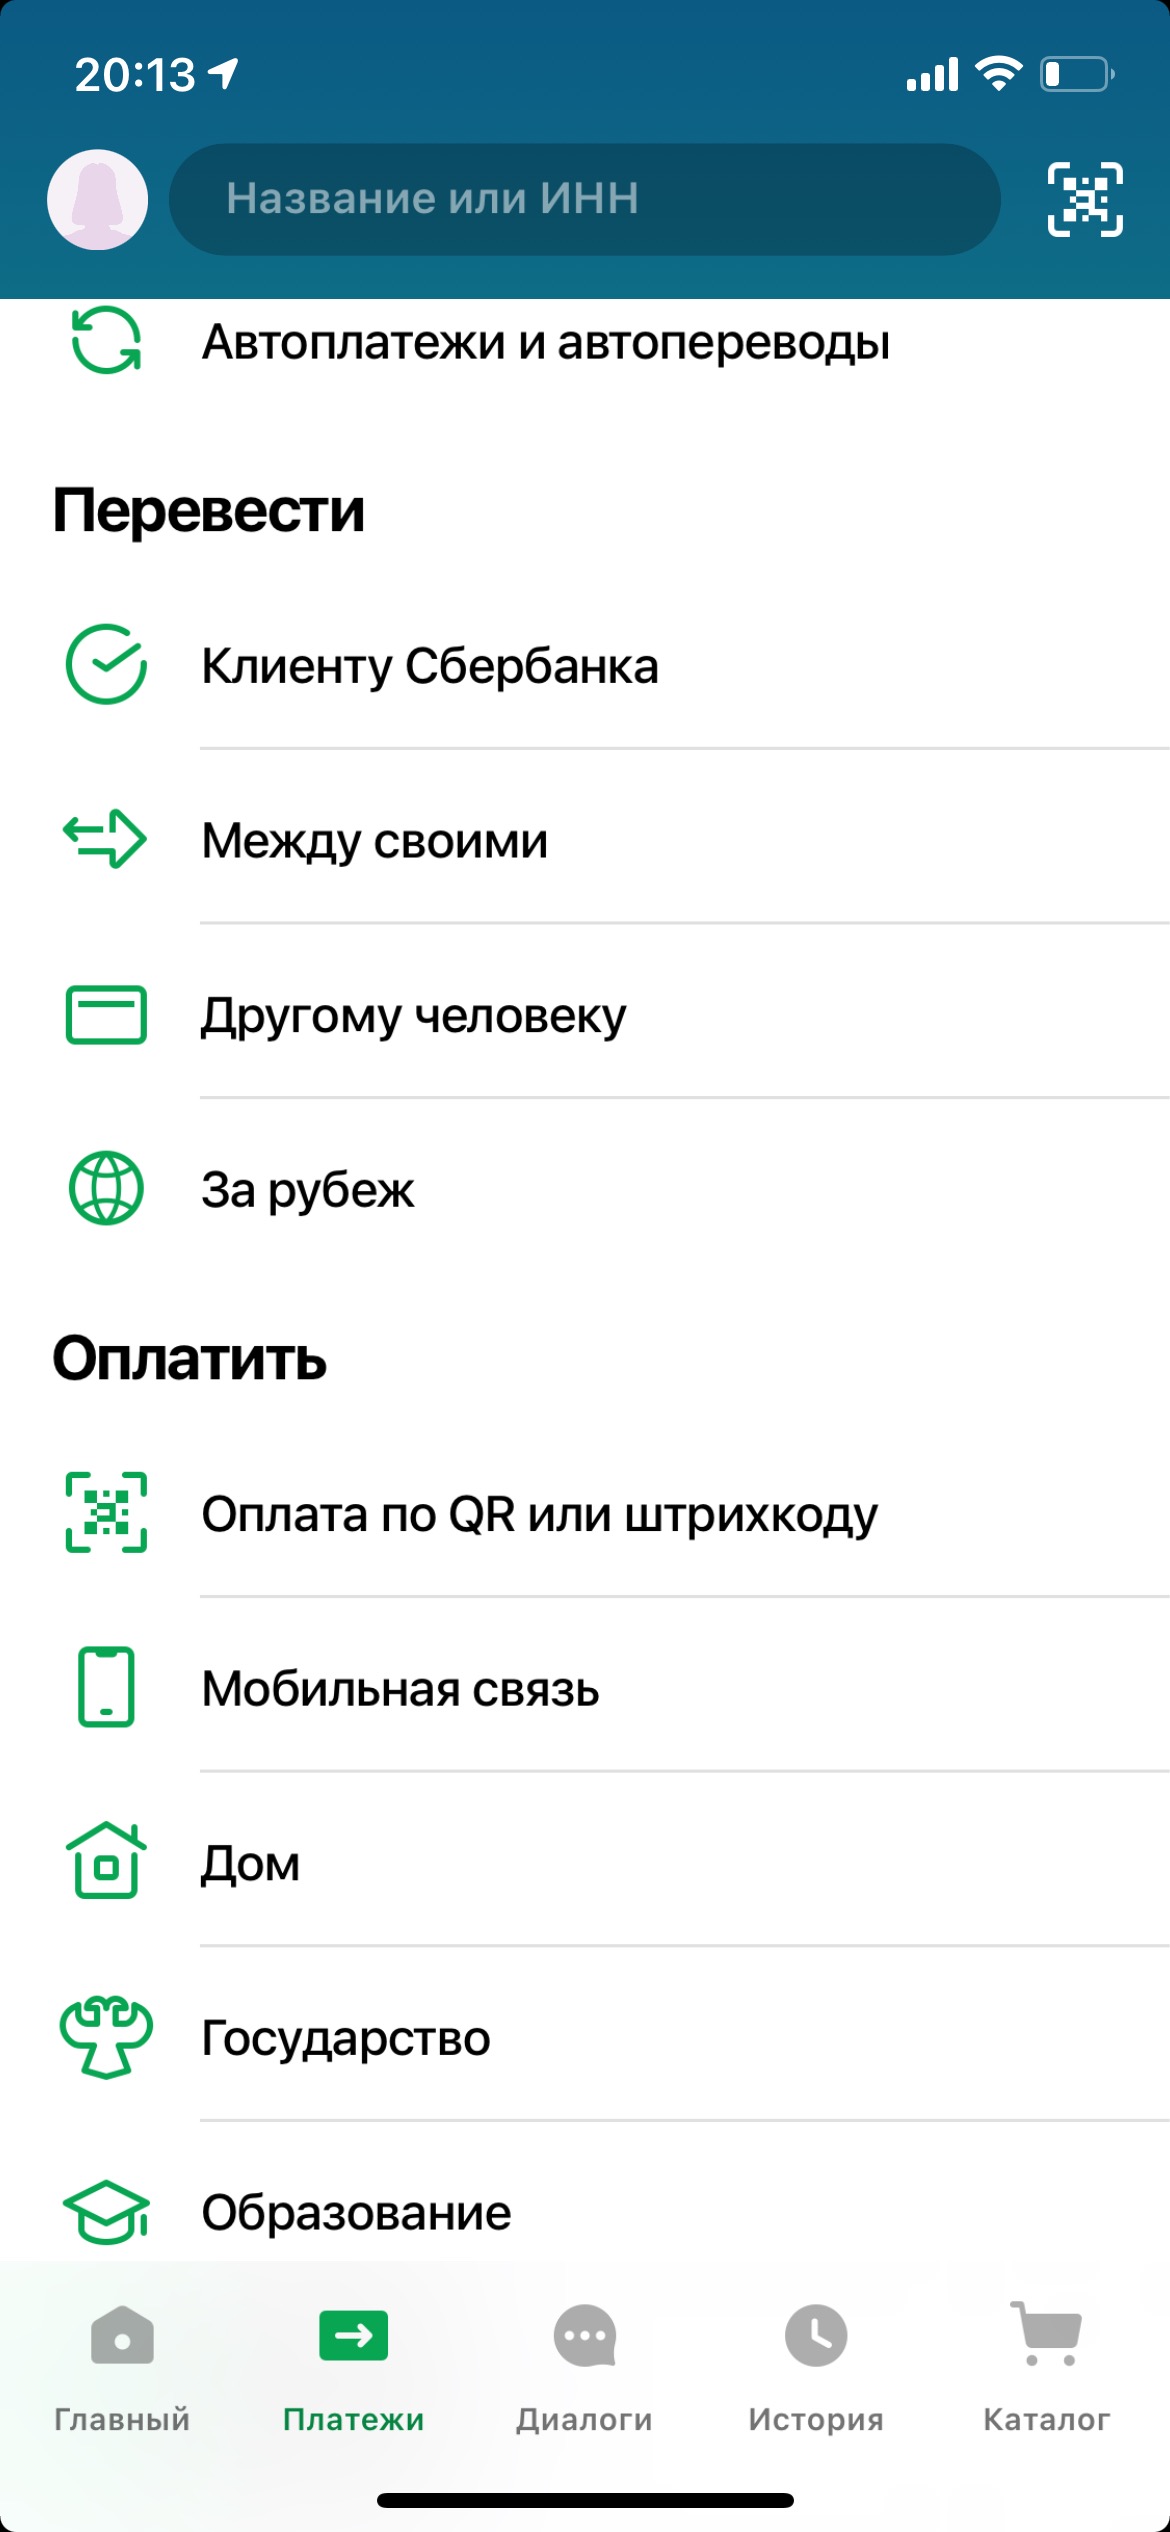 Инструкция по оплате госпошлины за российский паспорт через Сбербанк